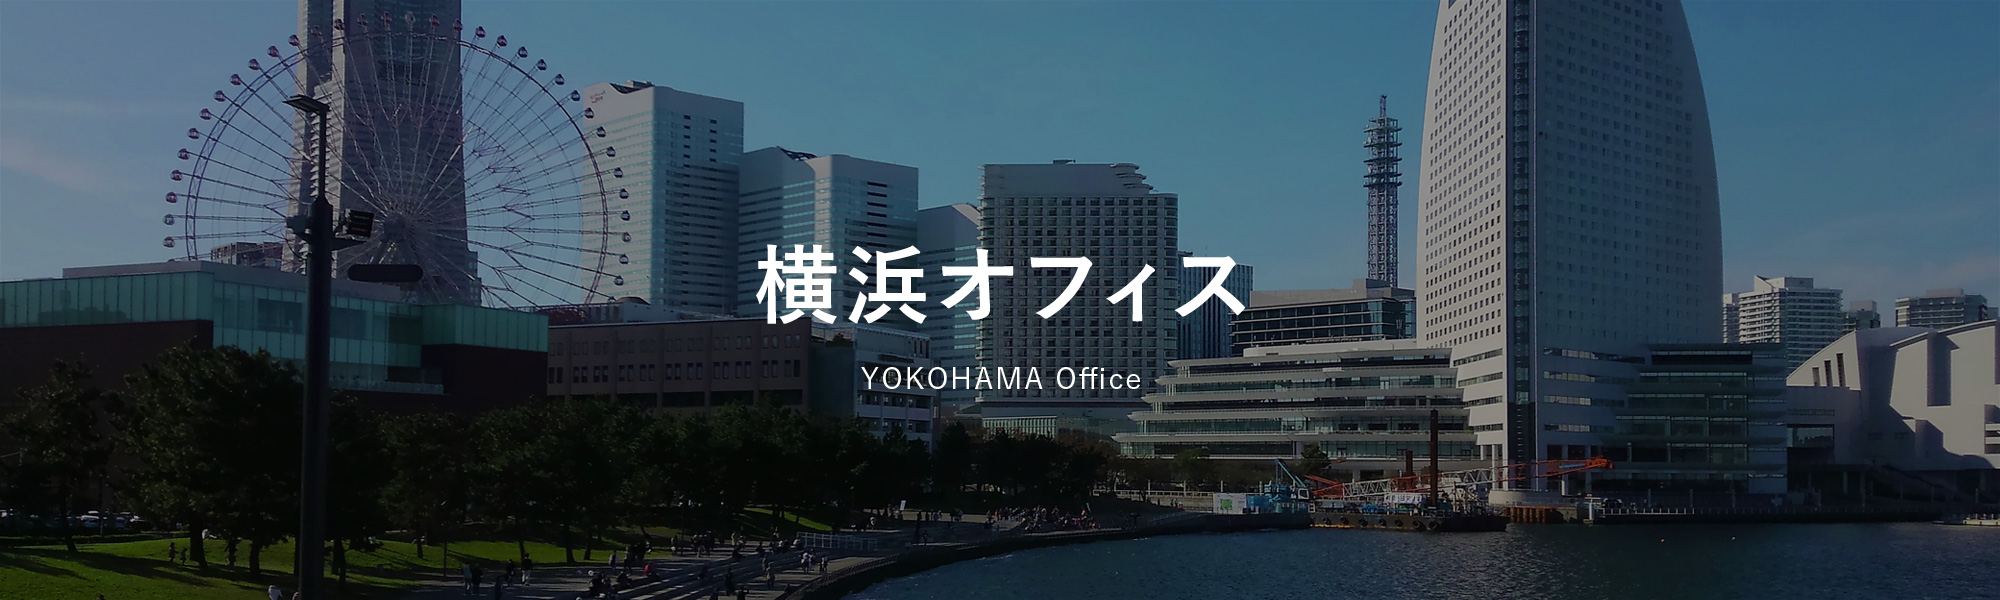 横浜オフィス